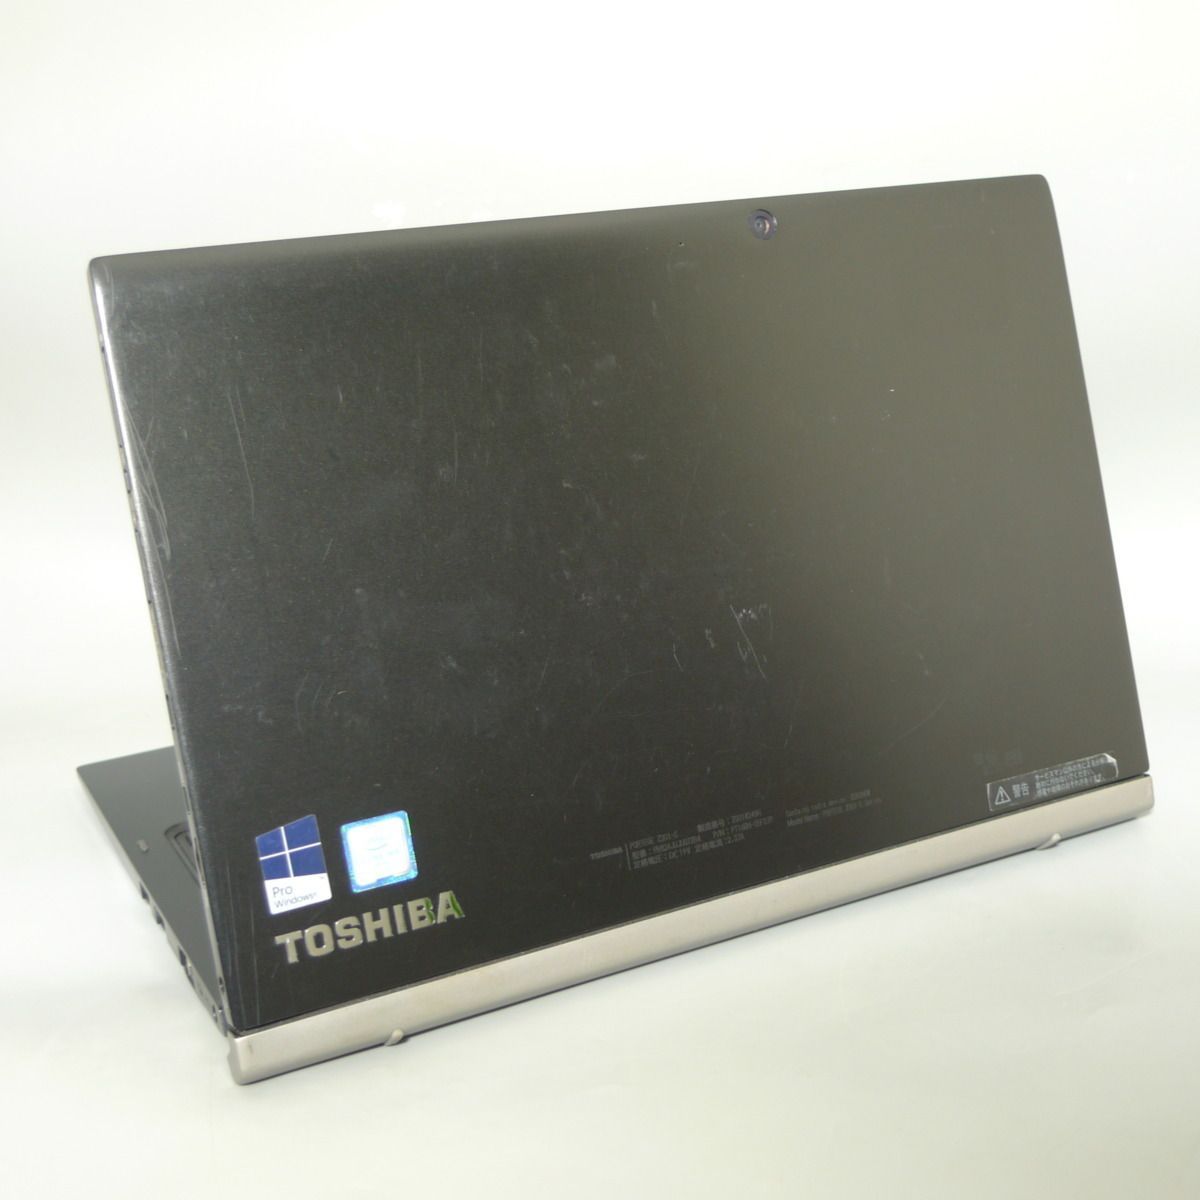 驚き価格 高速SSD 12.5型 ノートパソコン 東芝 Z20t-C 美品